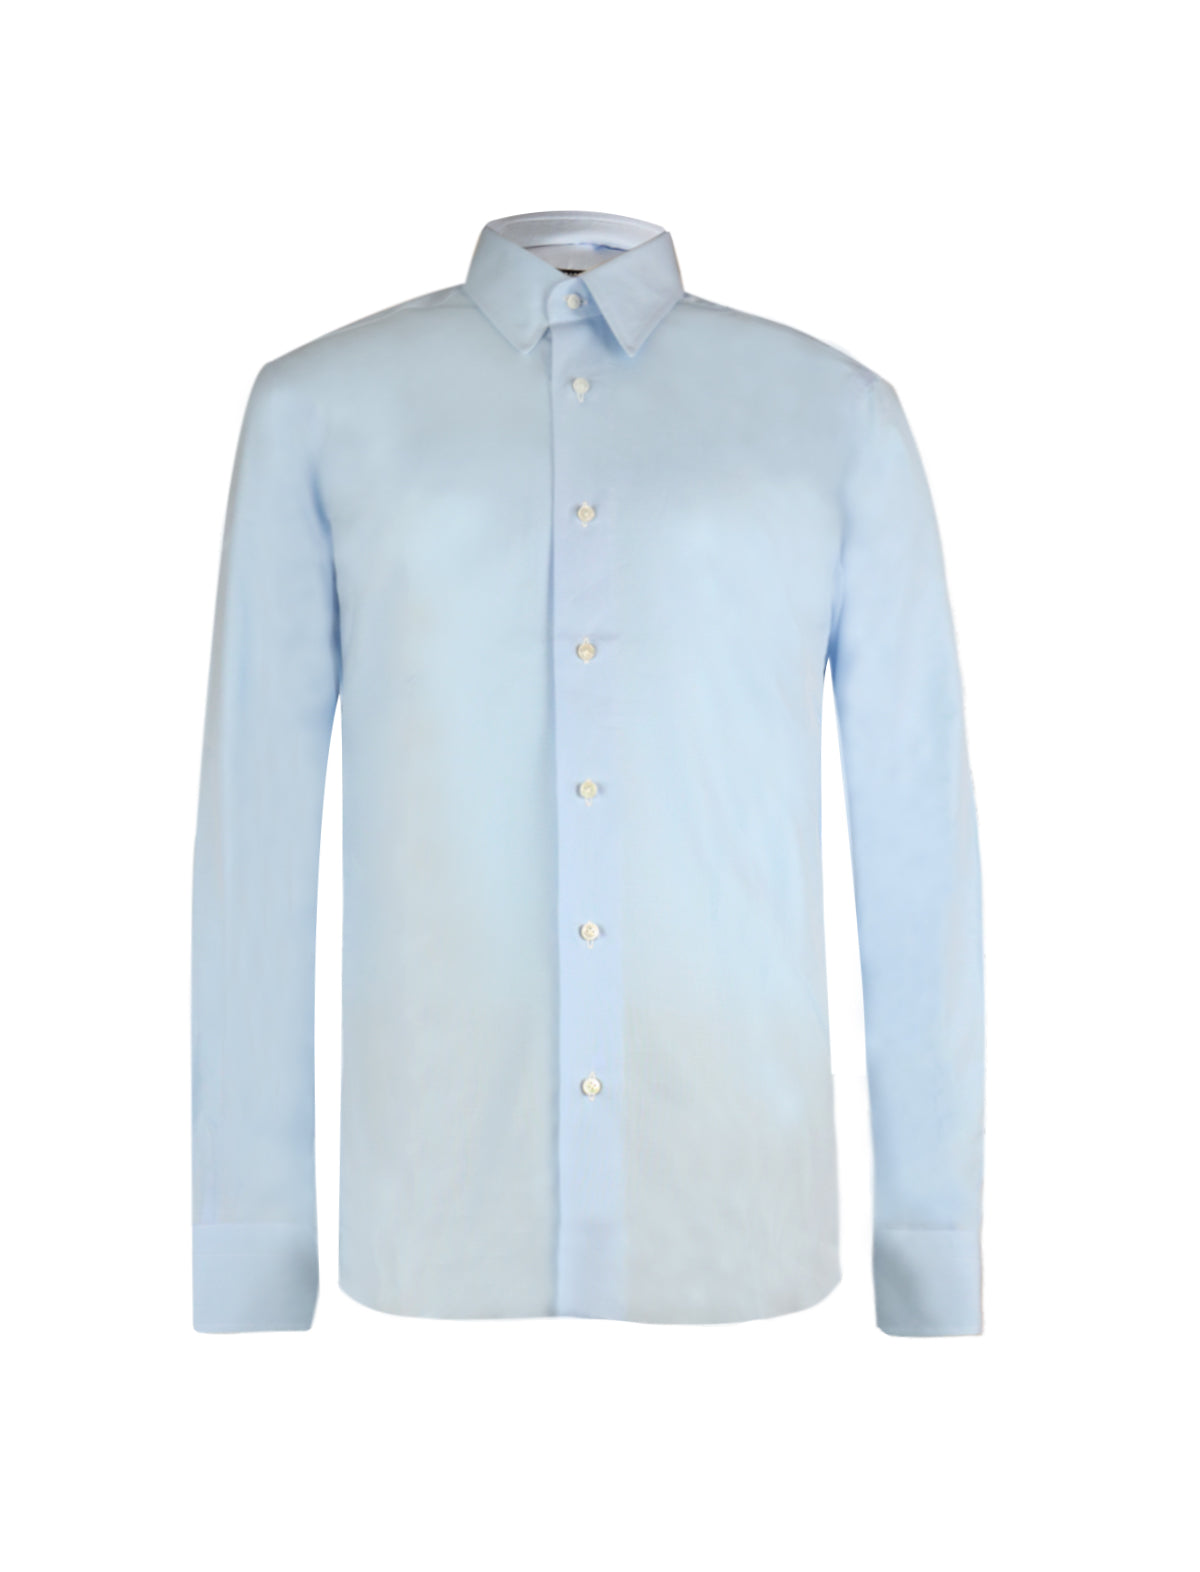 Barba Napoli Crisp Cotton Shirt in Blue